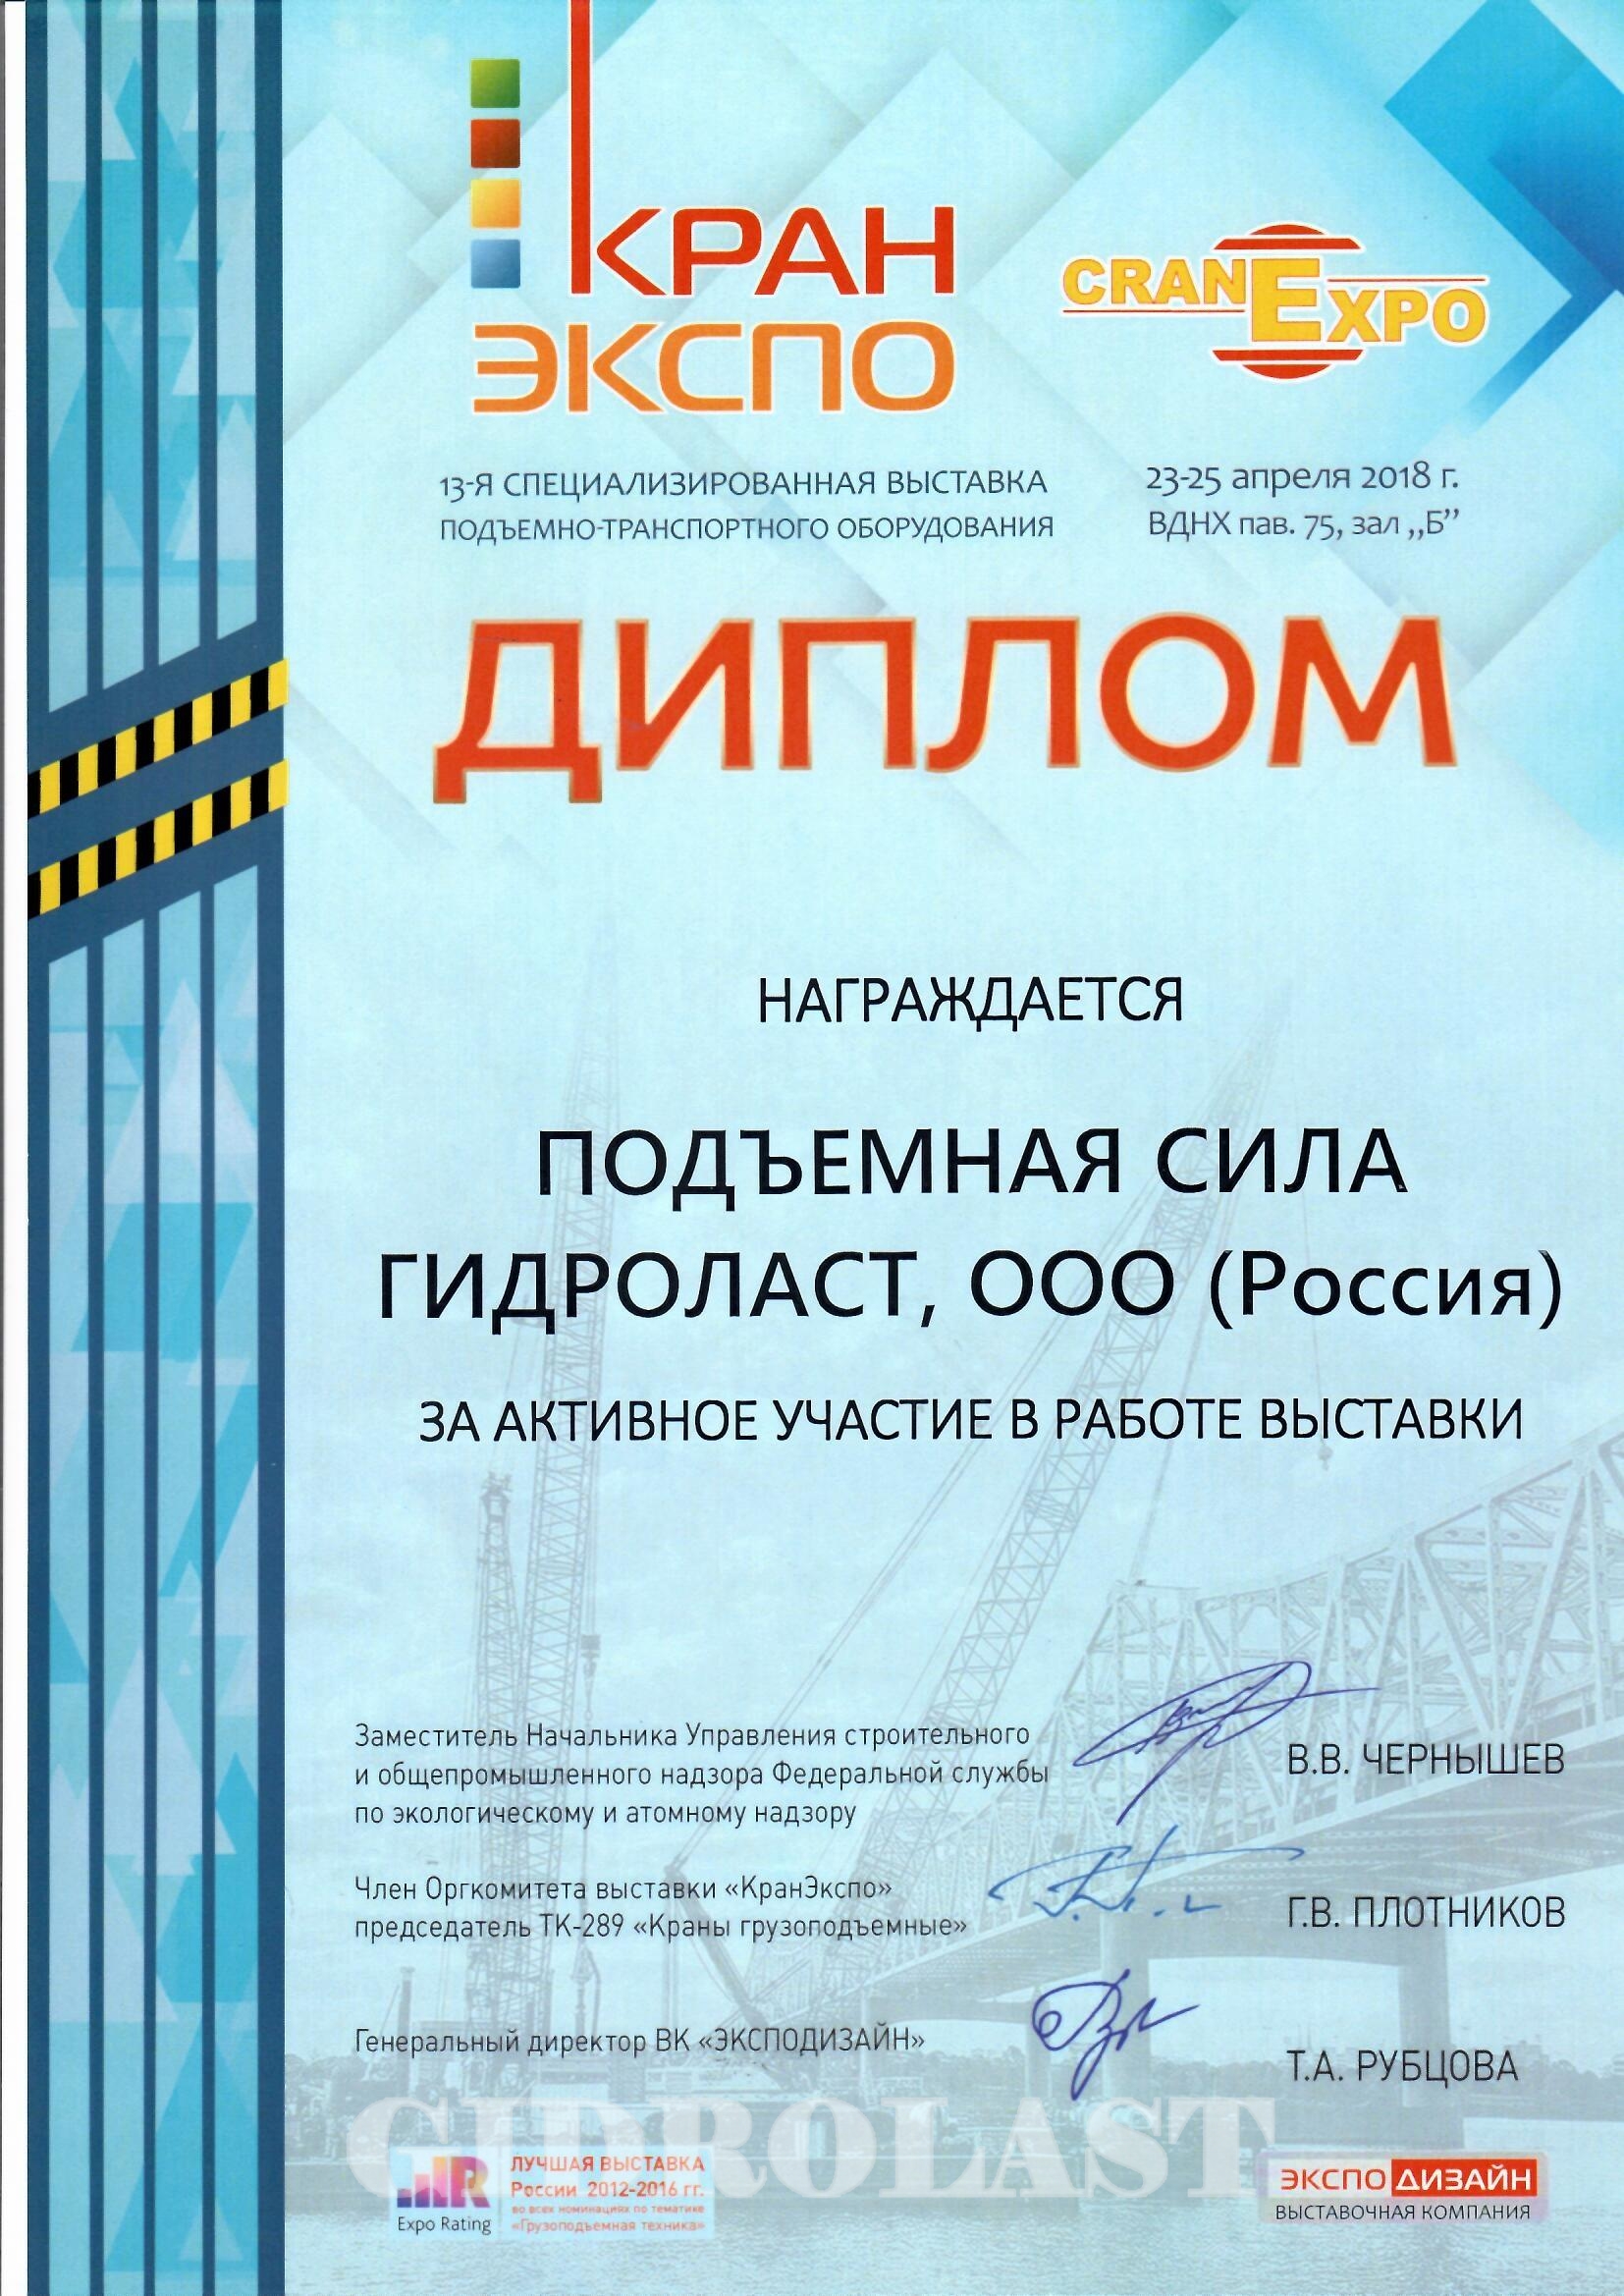 Гидроласт награжден дипломом выставки Кран Экспо